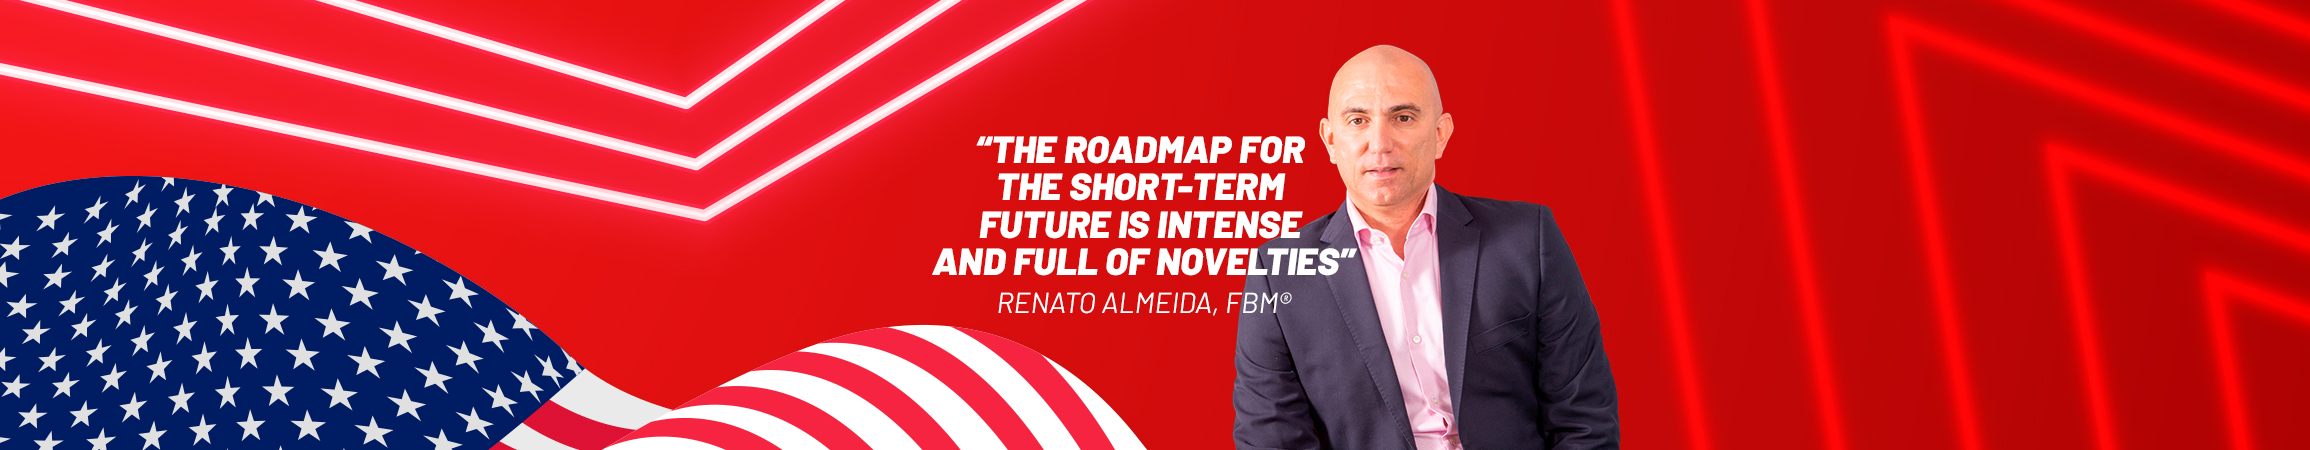 Renato Almeida: “La hoja de ruta para el futuro a corto plazo es intensa y está llena de novedades”